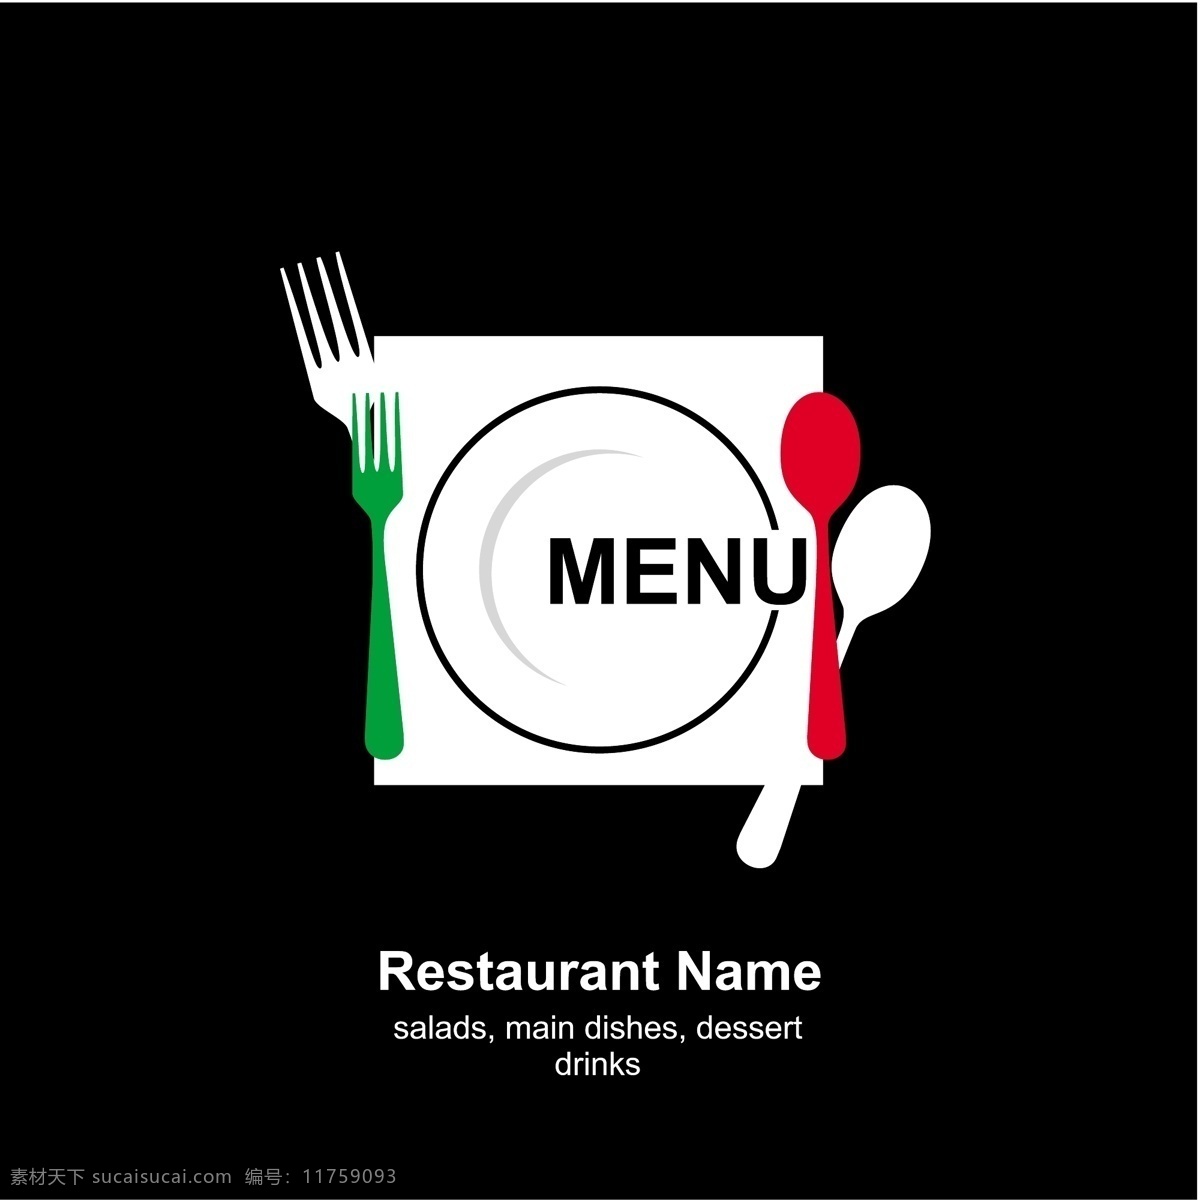 餐厅菜单封面 餐厅 菜单 刀叉 主题 封面 黑色背景 菜单菜谱 矢量素材